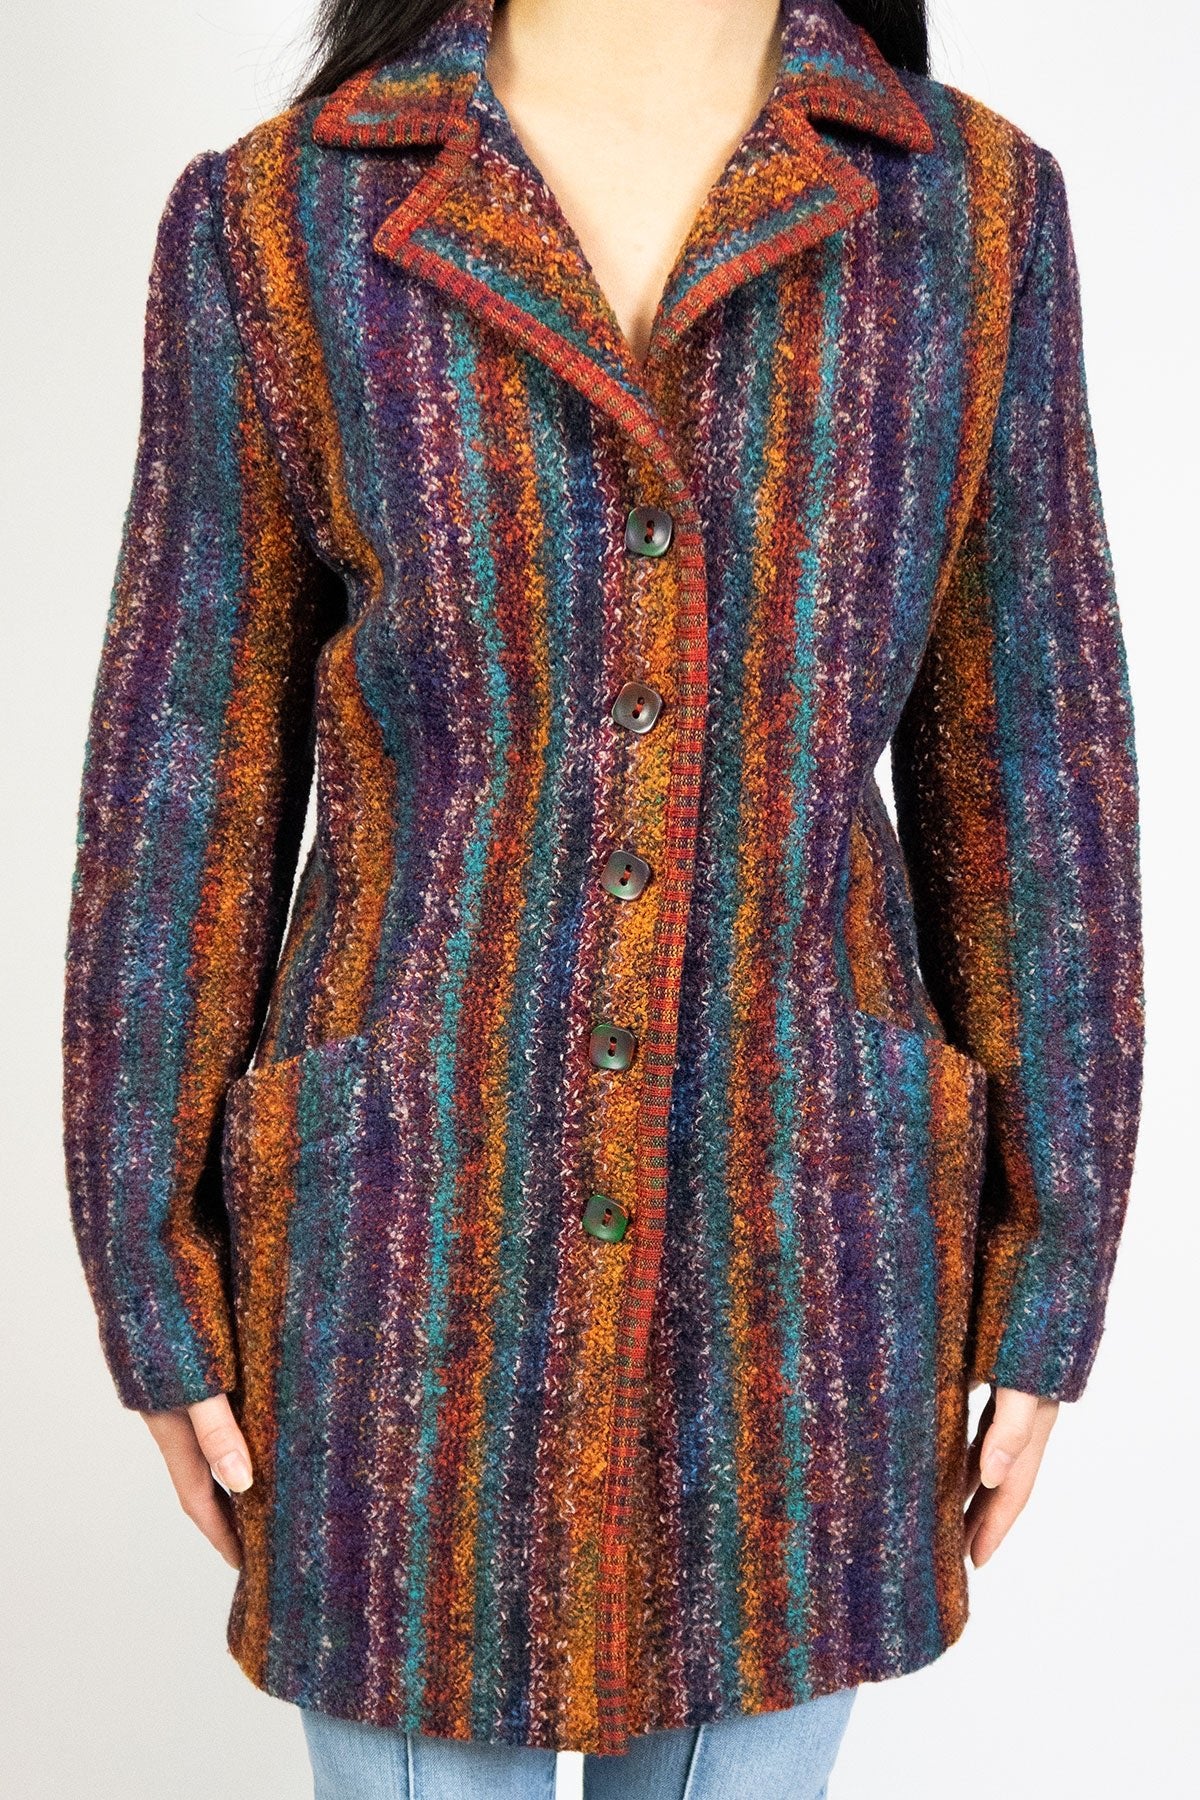 Missoni Wool Patterned Jacket Cardigan / 38 - Jade Vintage